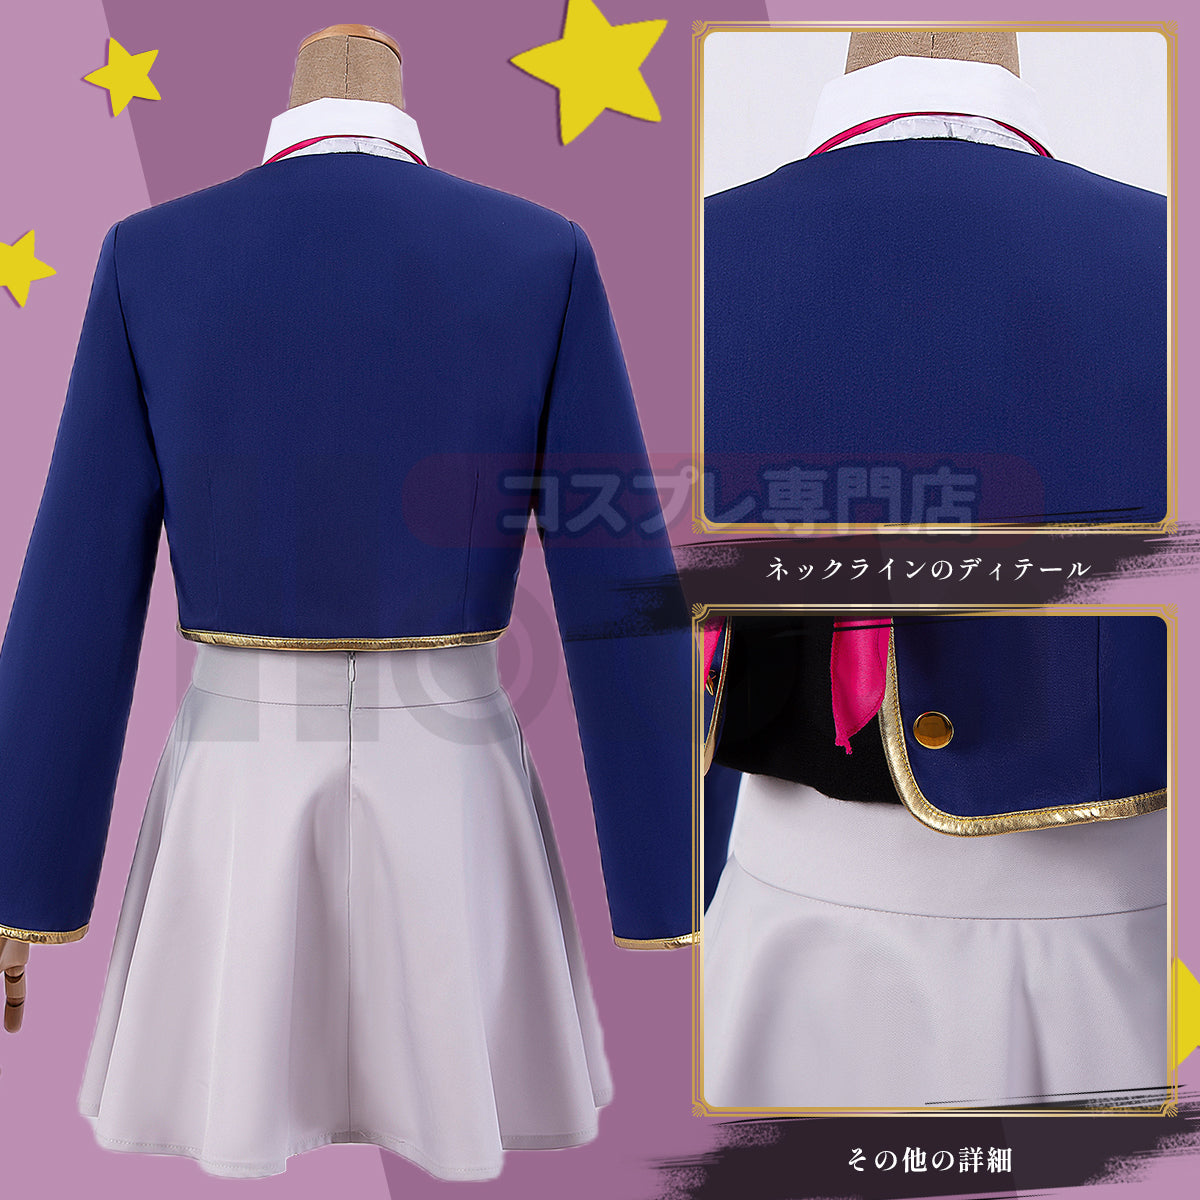 HOLOUN OSHI NO KO Anime Cosplay Costume Arima Kana School Uniform Dress Hat Tops Skirt Sister Party Gift Halloween Christmas